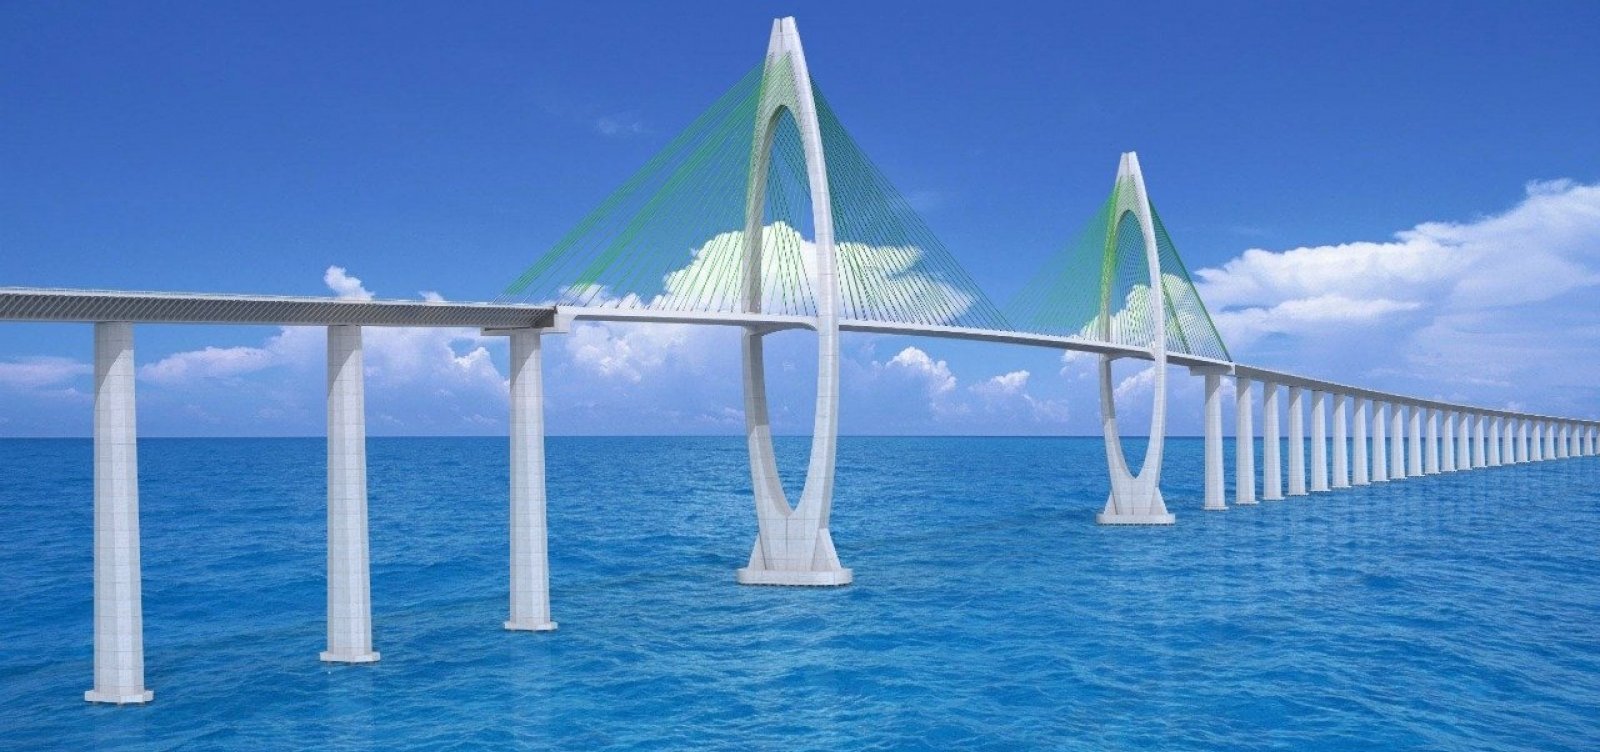 MP-BA recomenda estudos técnicos para instalação da ponte Salvador - Ilha de Itaparica